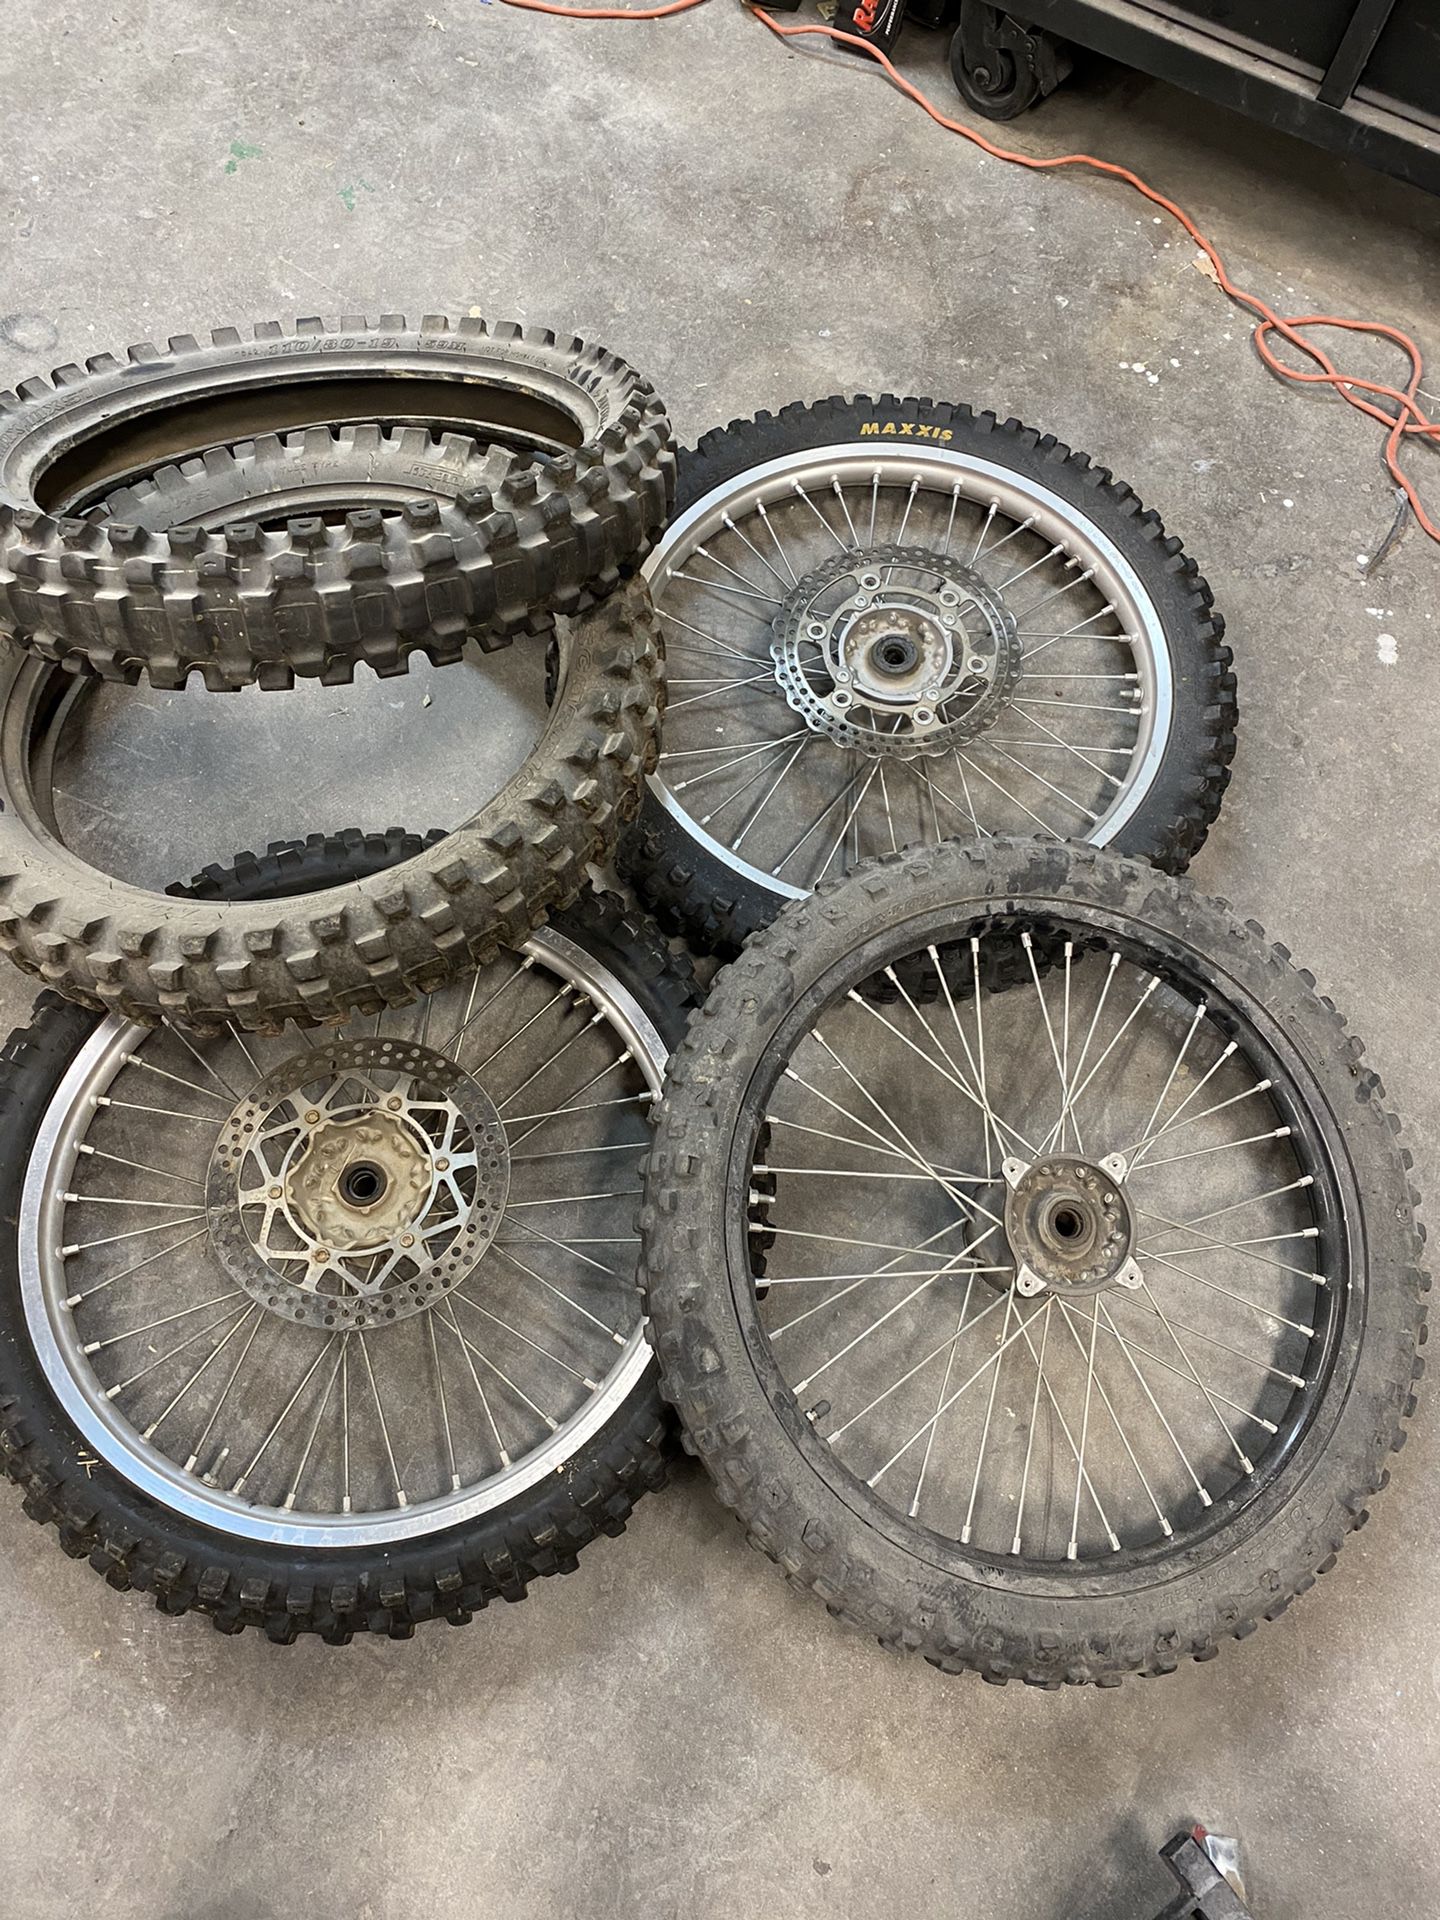 Dirt bike rims and tires